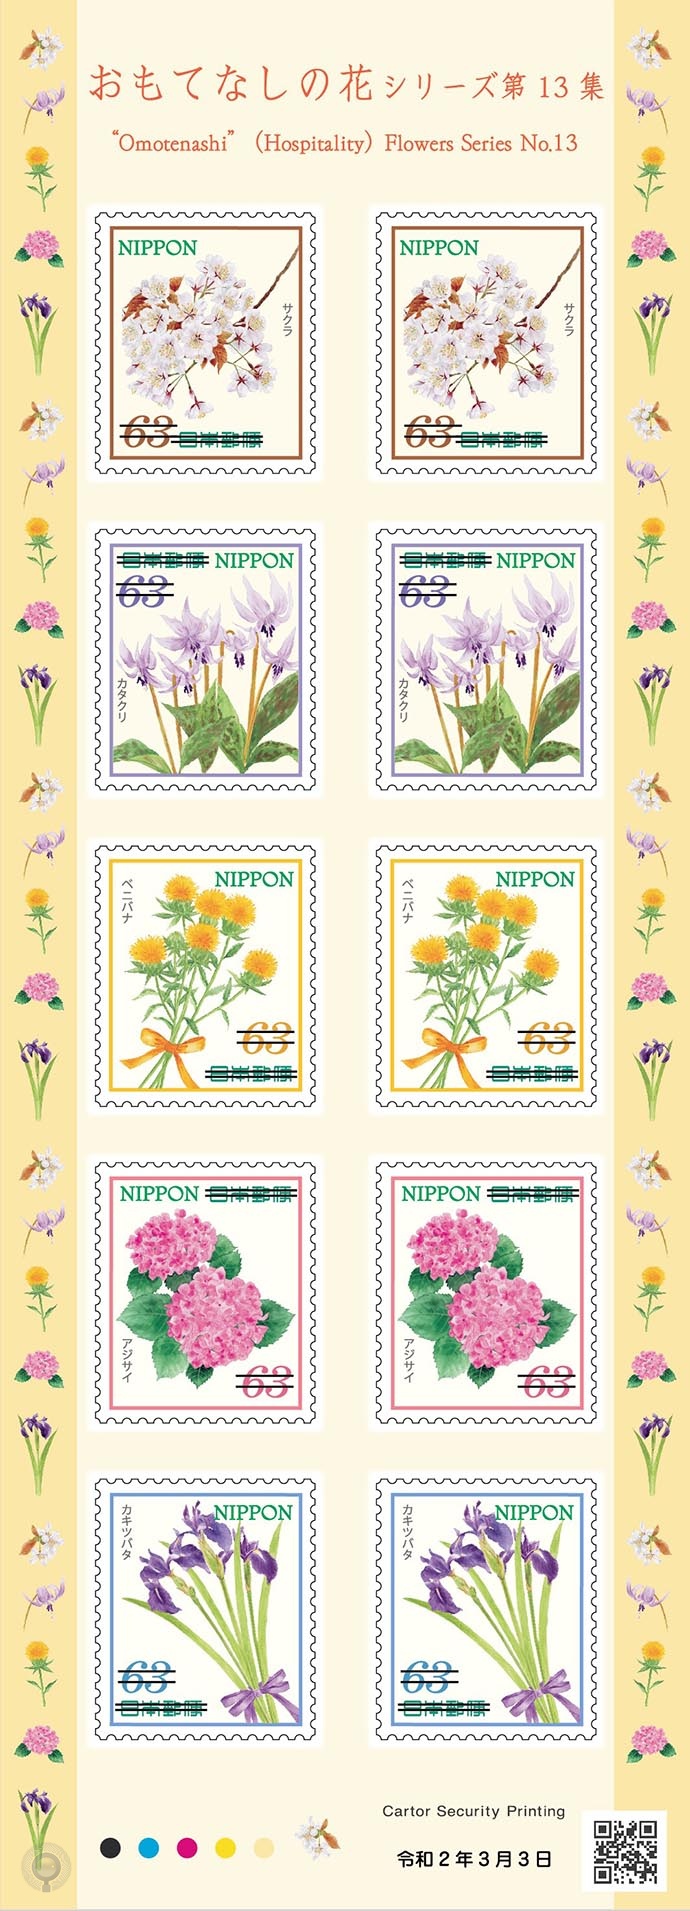 日本3月3日发行 待客花卉 十三 系列邮票 集邮圈 Philatelycircle